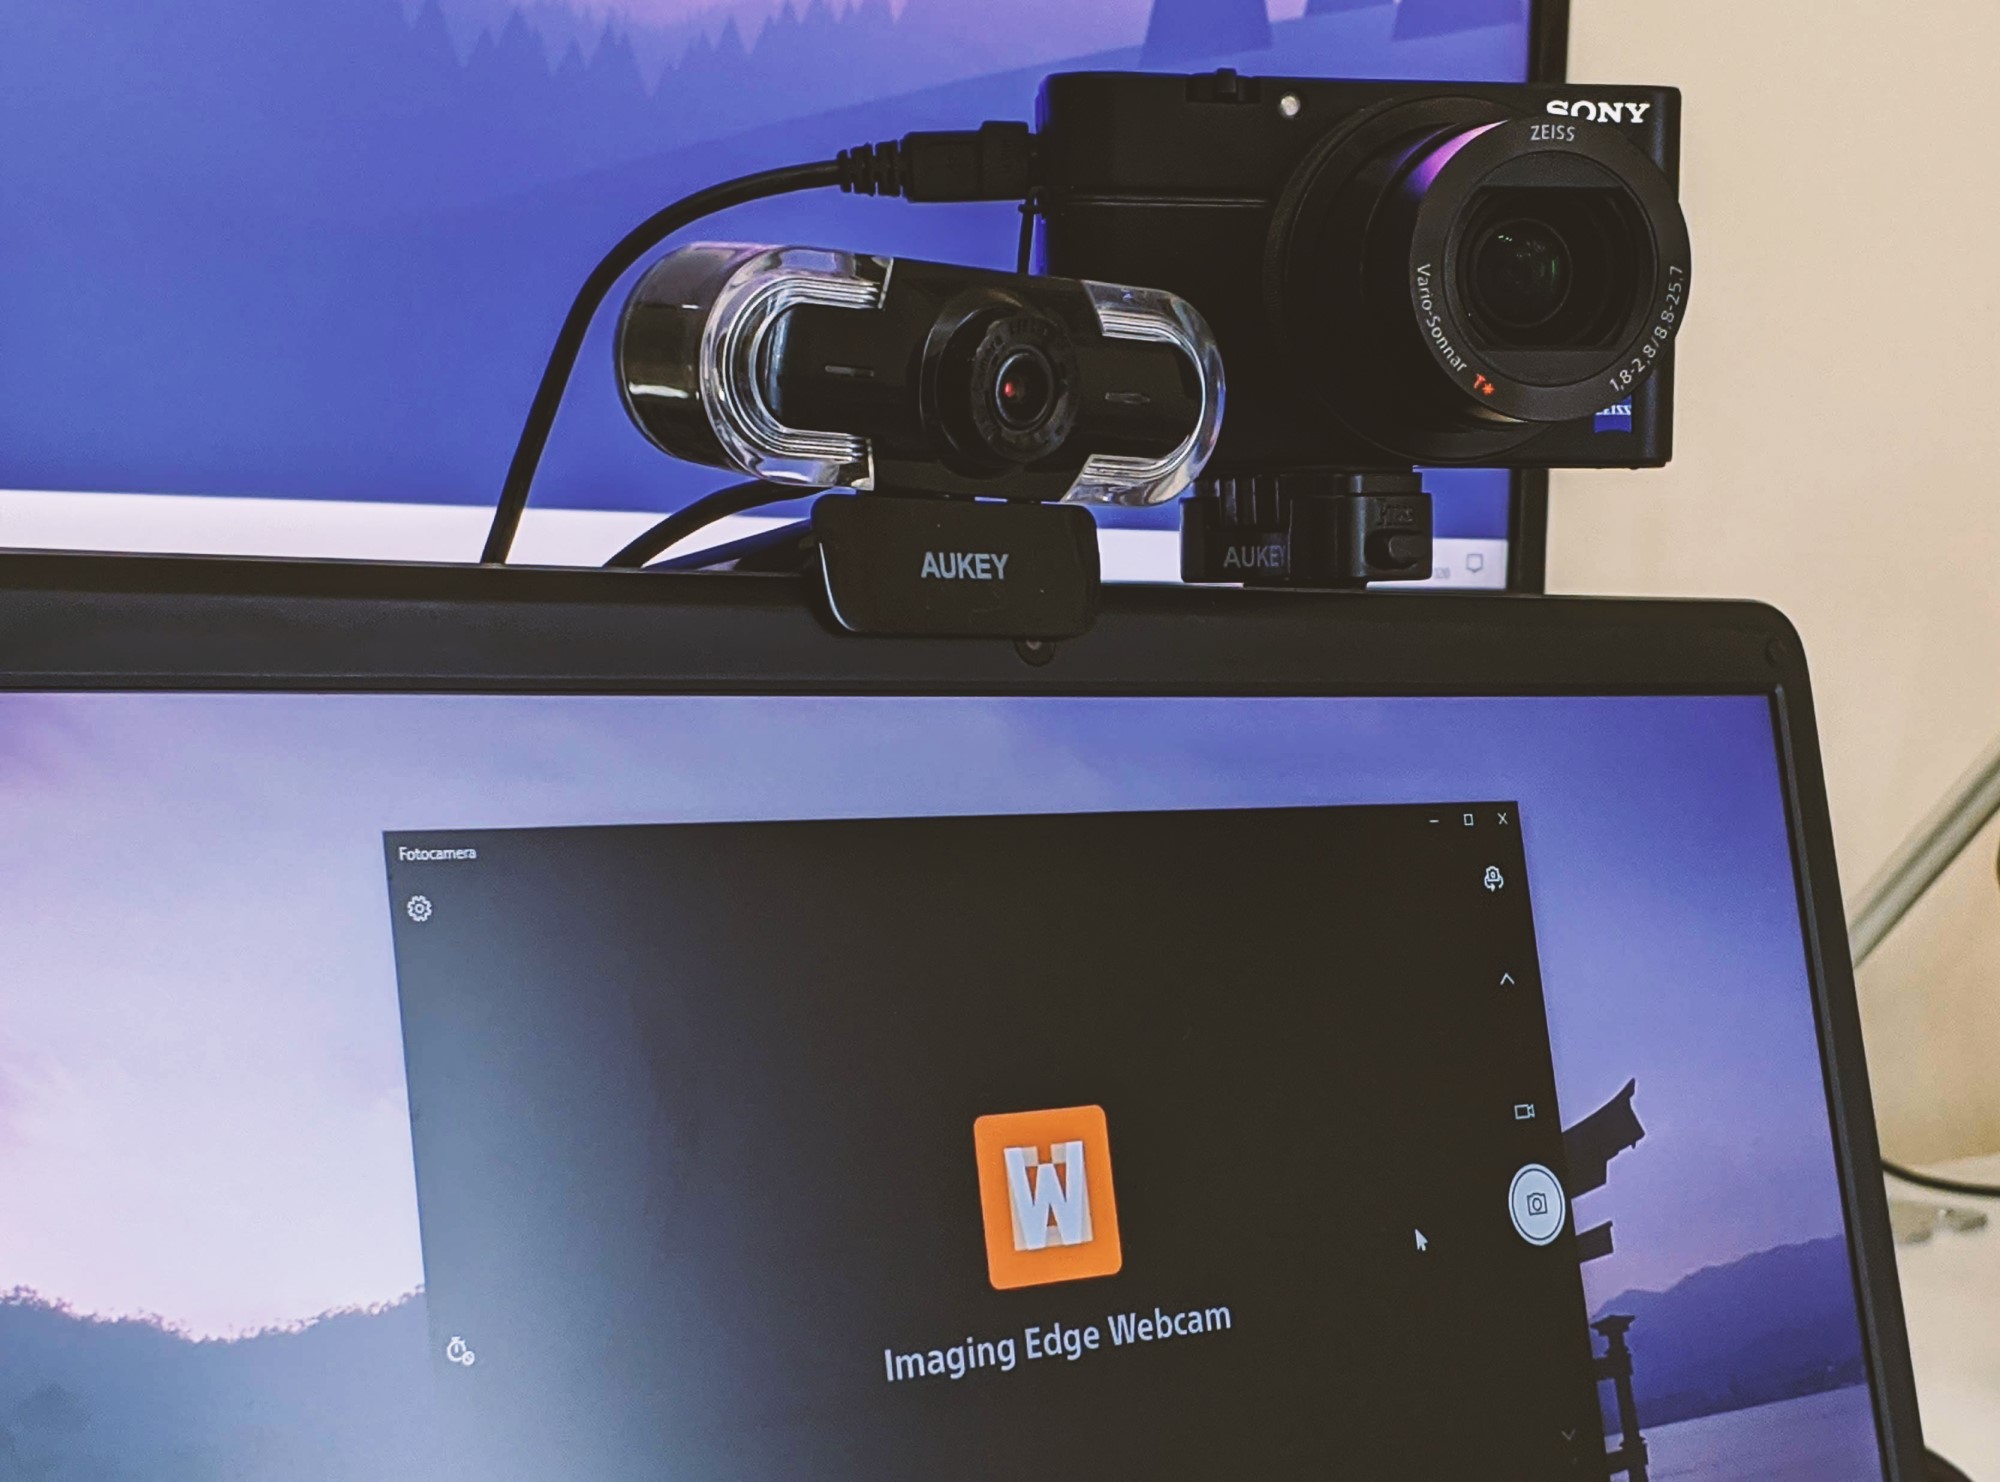 Usare la fotocamera Sony come webcam del PC con Windows 10